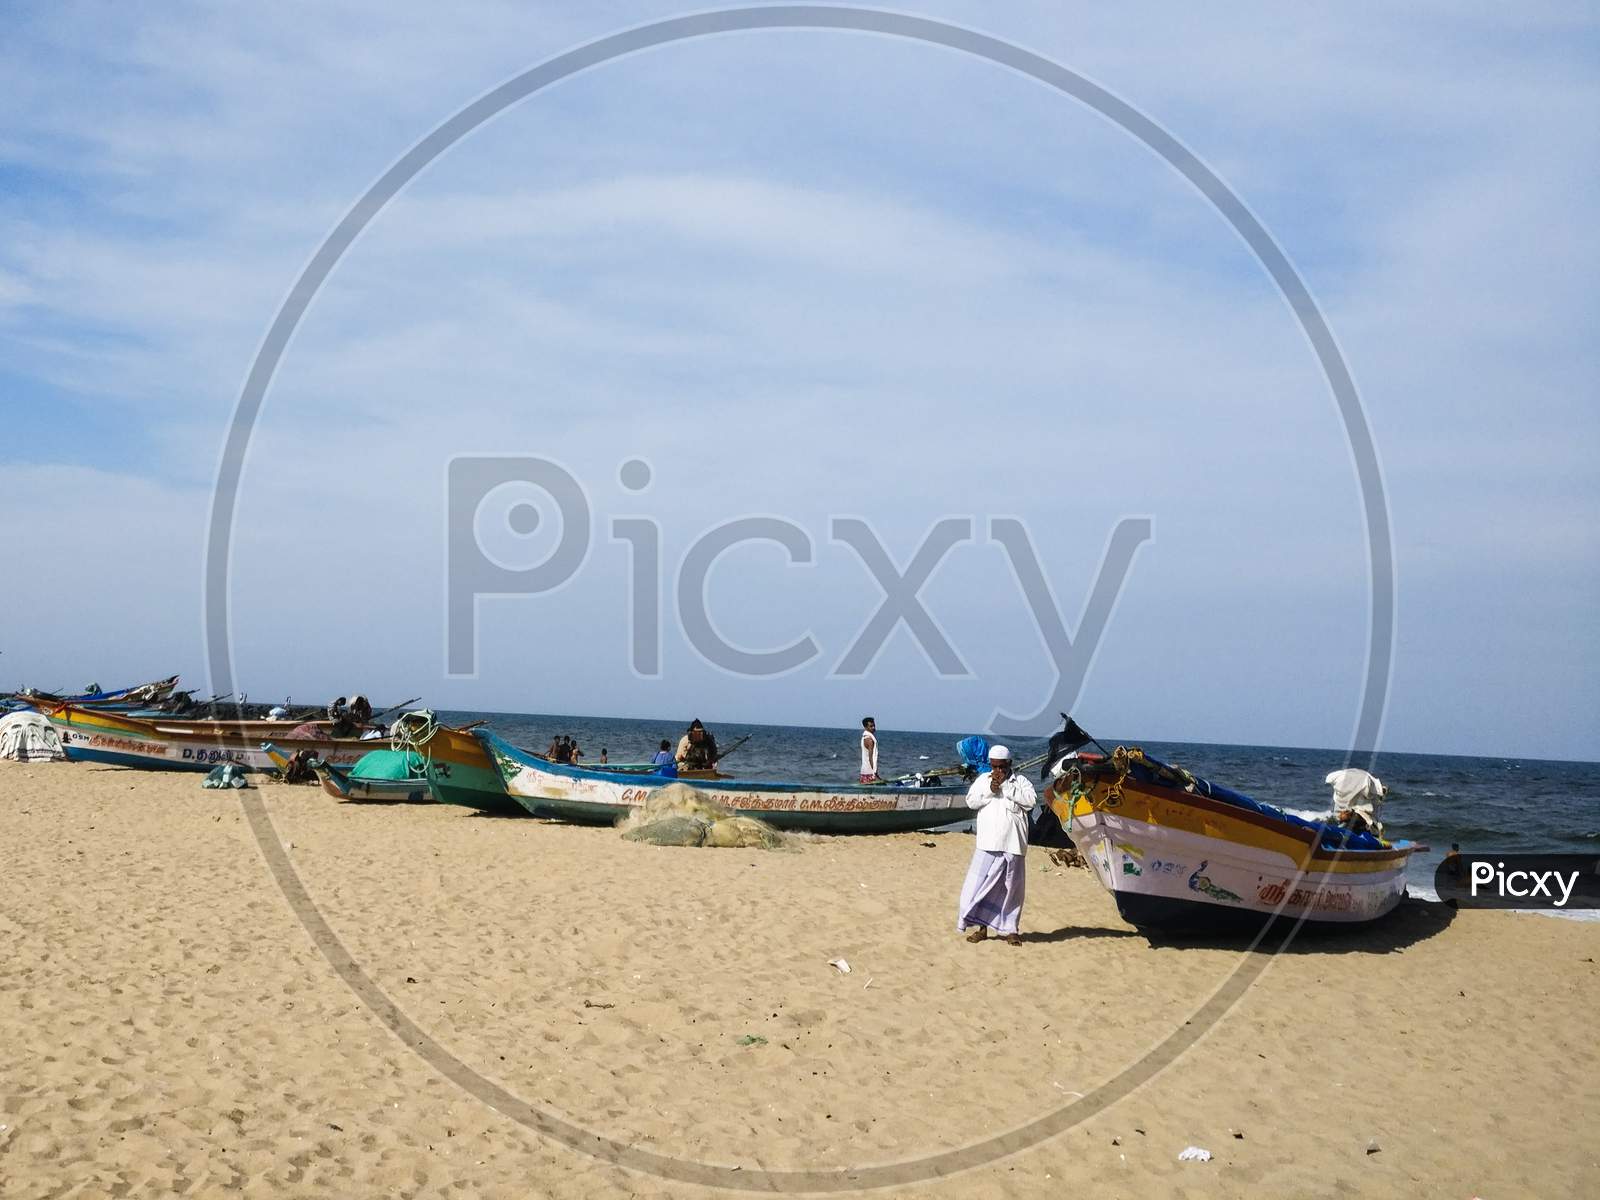 Pondicherry beach